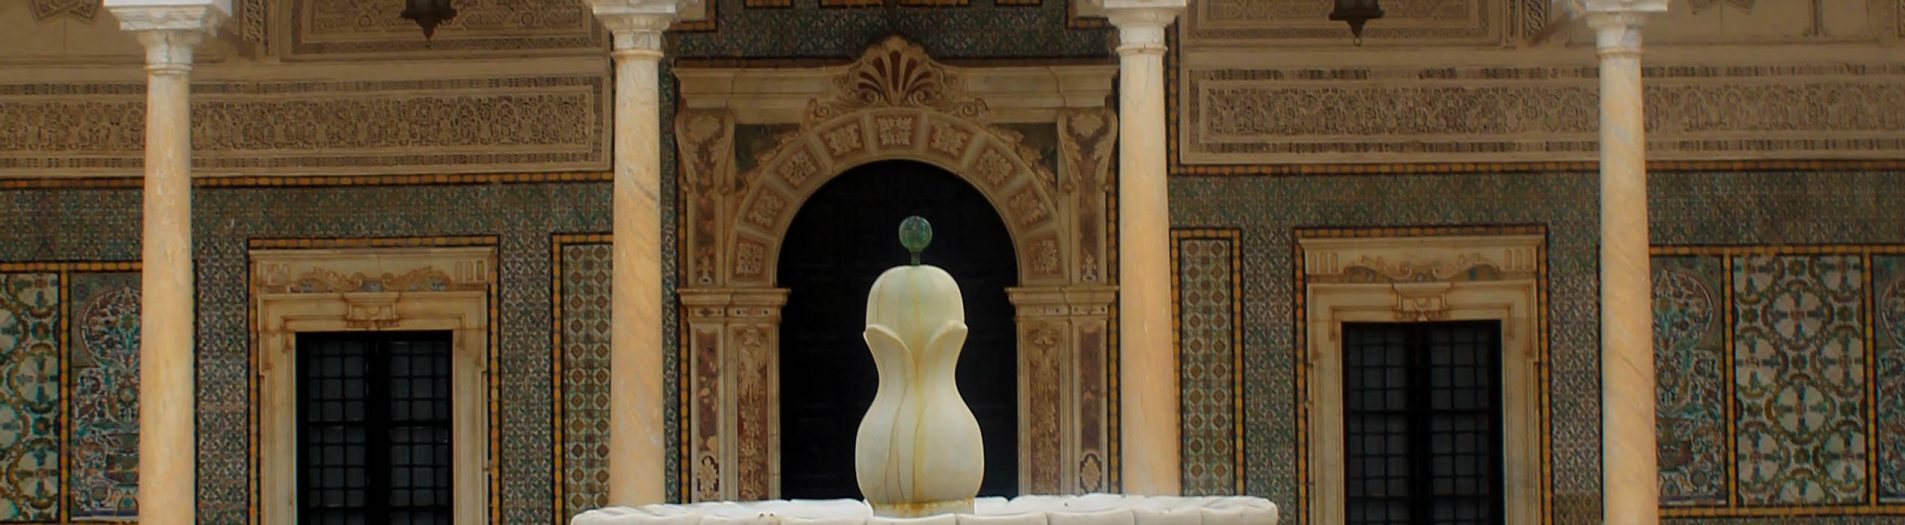 Le musée militaire de la Tunisie, palais de la Rose